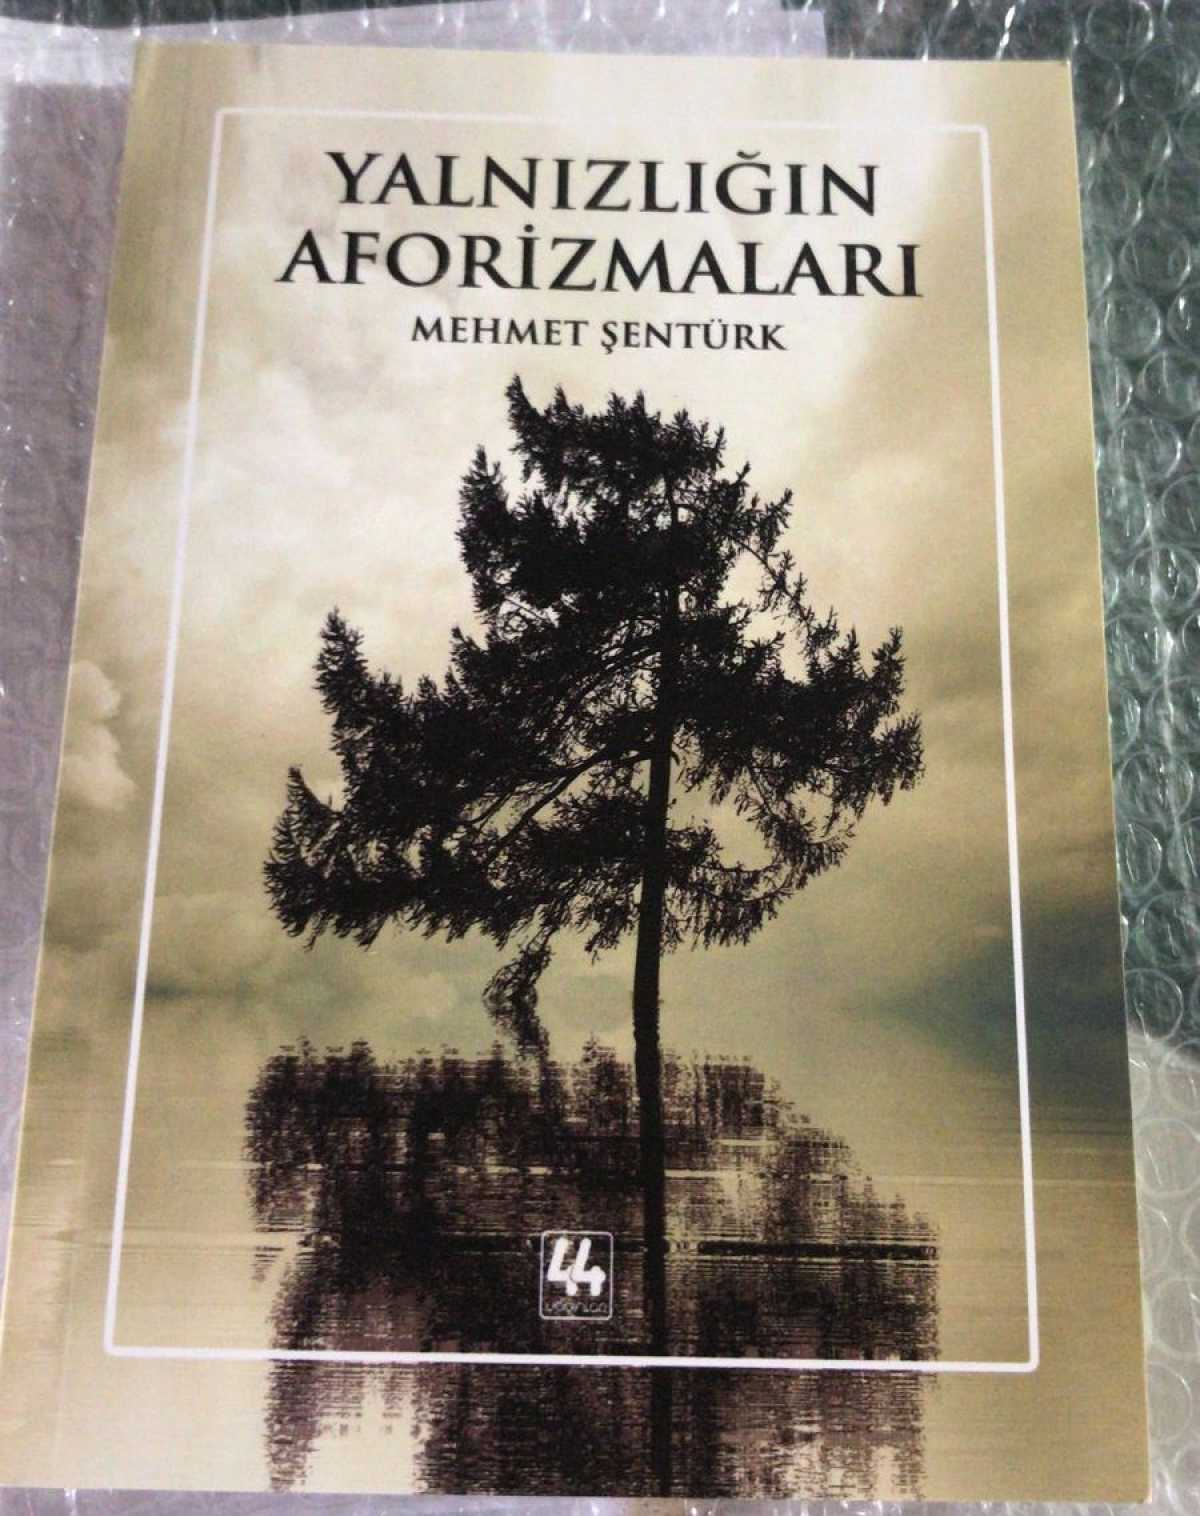 İmzalı Kitap Kampanyası - "Yalnızlığın Aforizmaları" Mehmet Şentürk